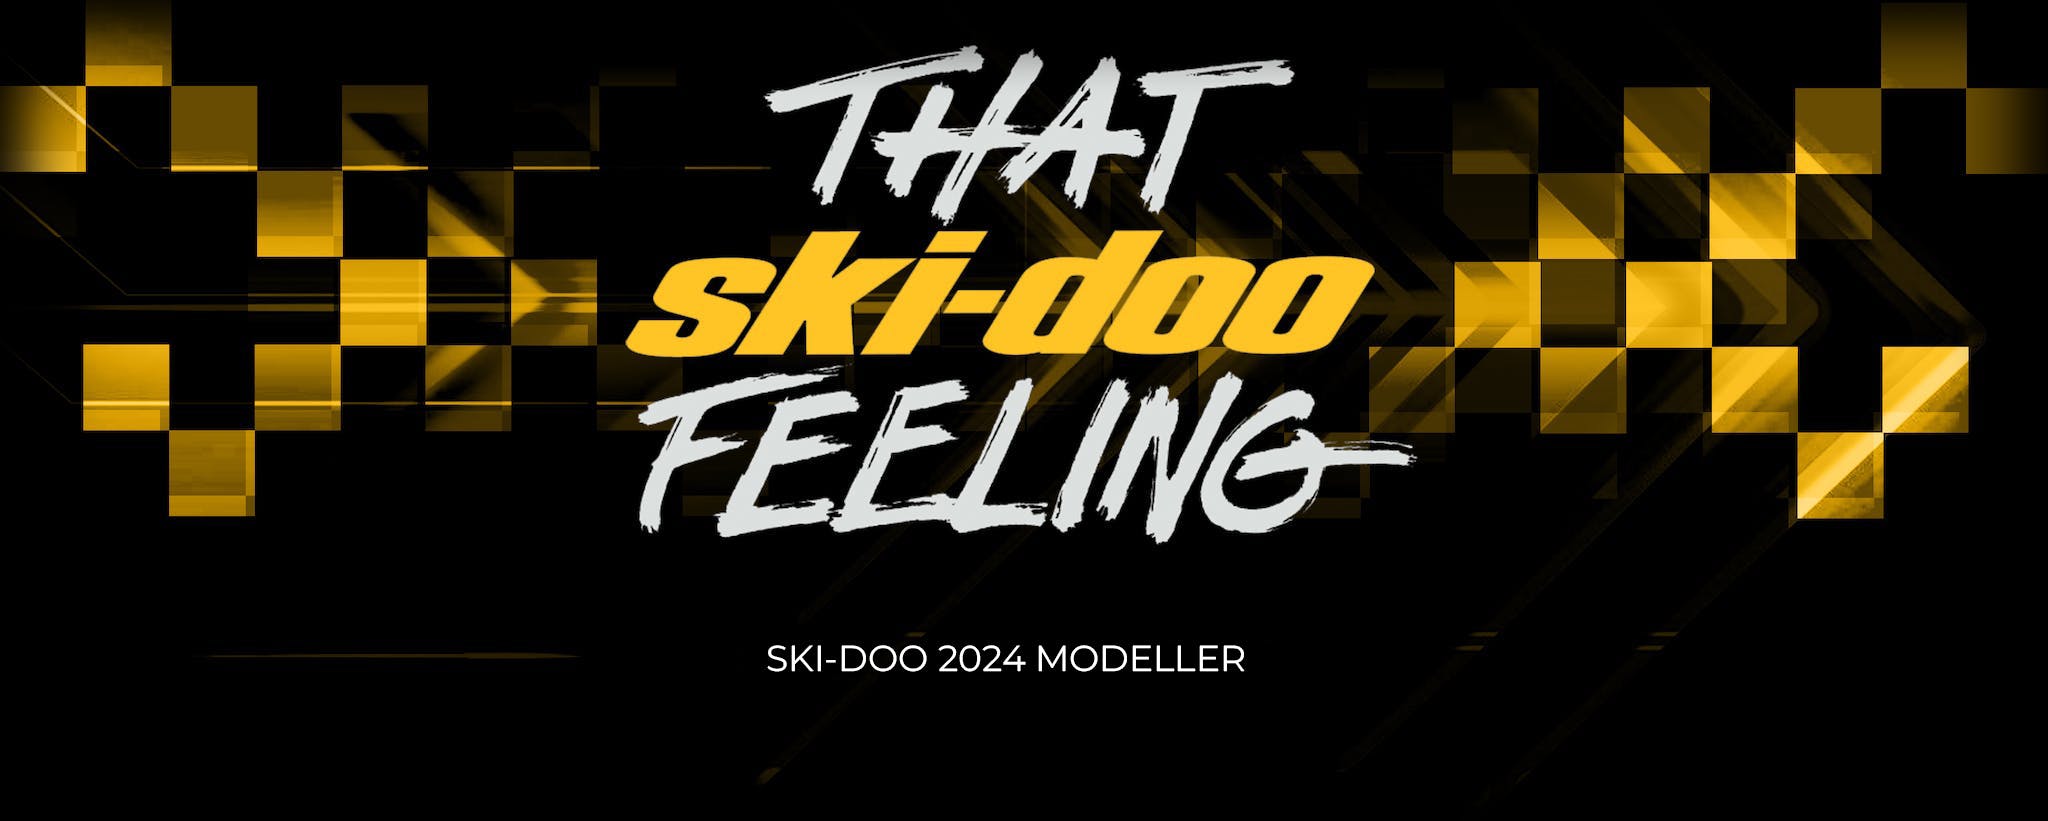 Ski-Doo Modeller 2024 banner